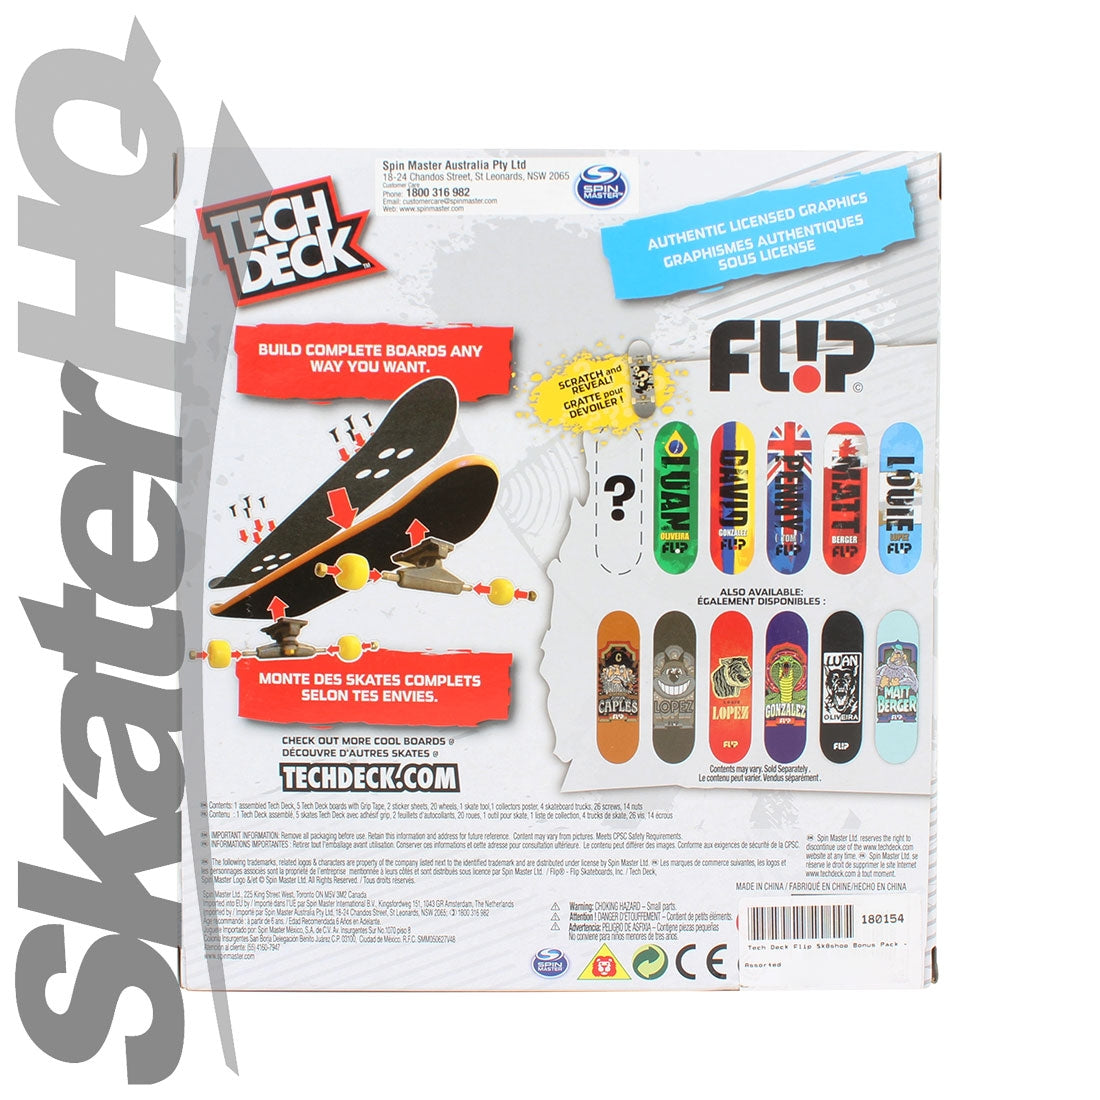 Tech Deck Sk8shop Pack - Flip Skateboard Accessories